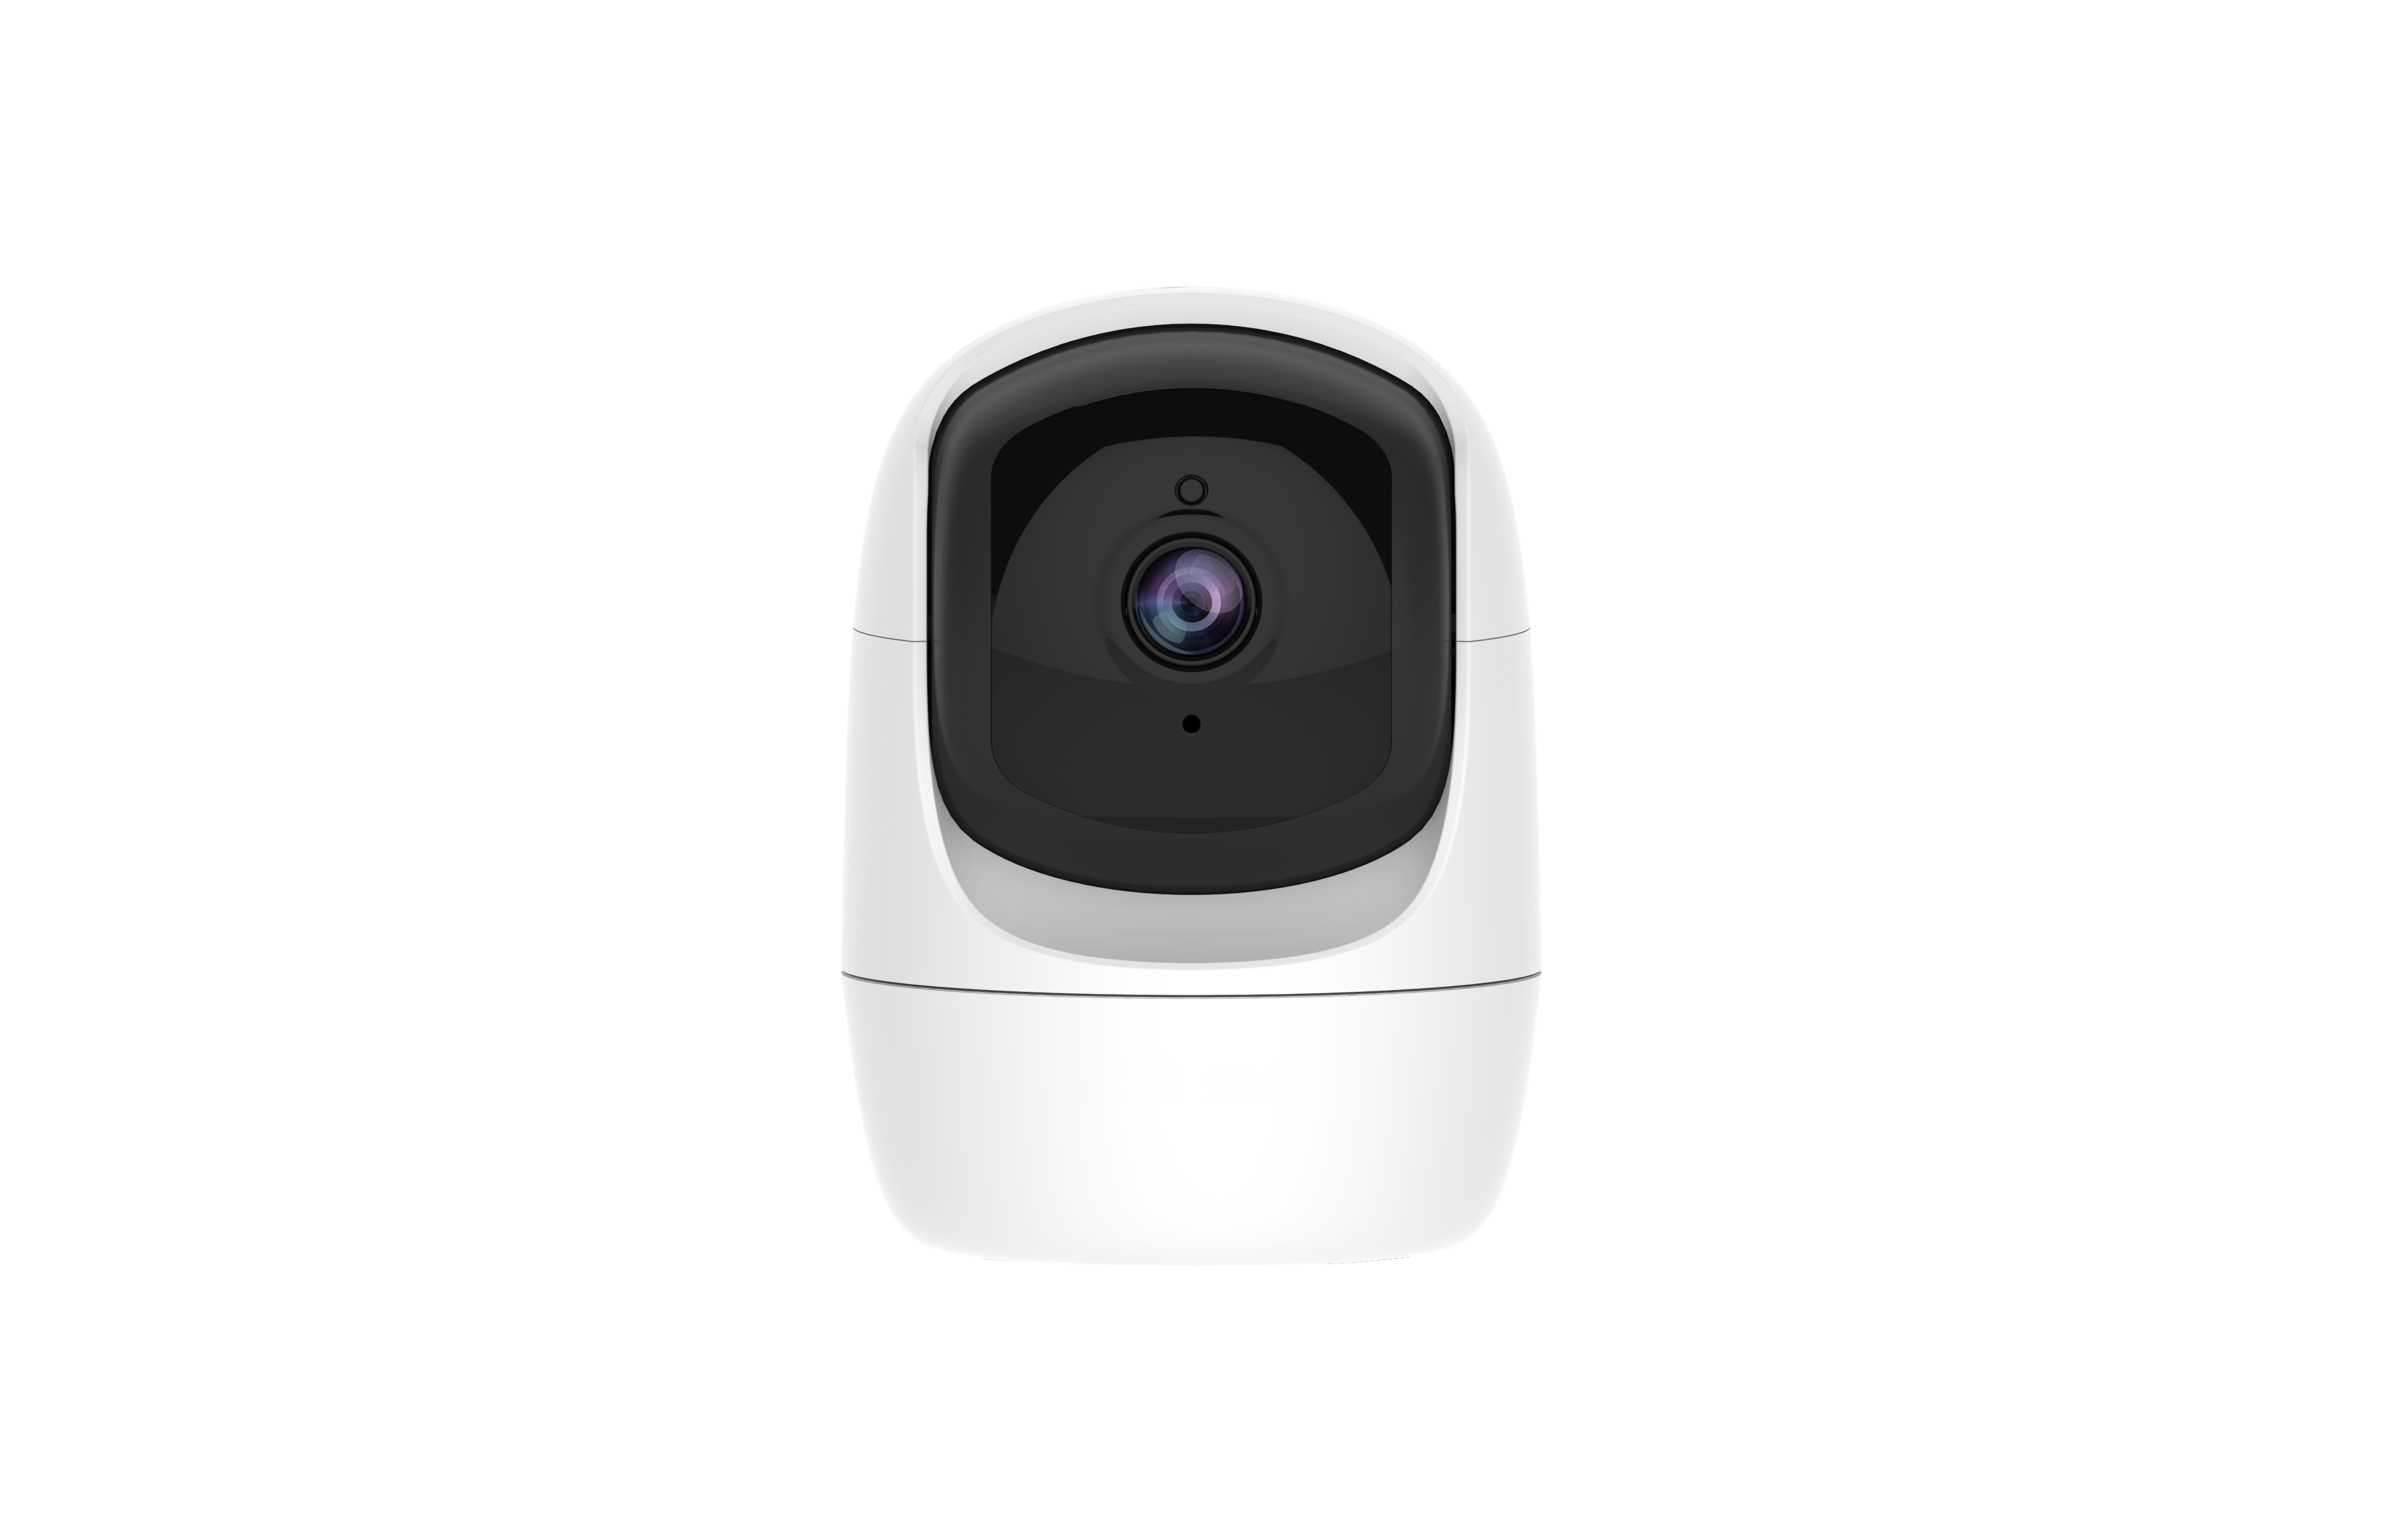 How to install home surveillance cameras?